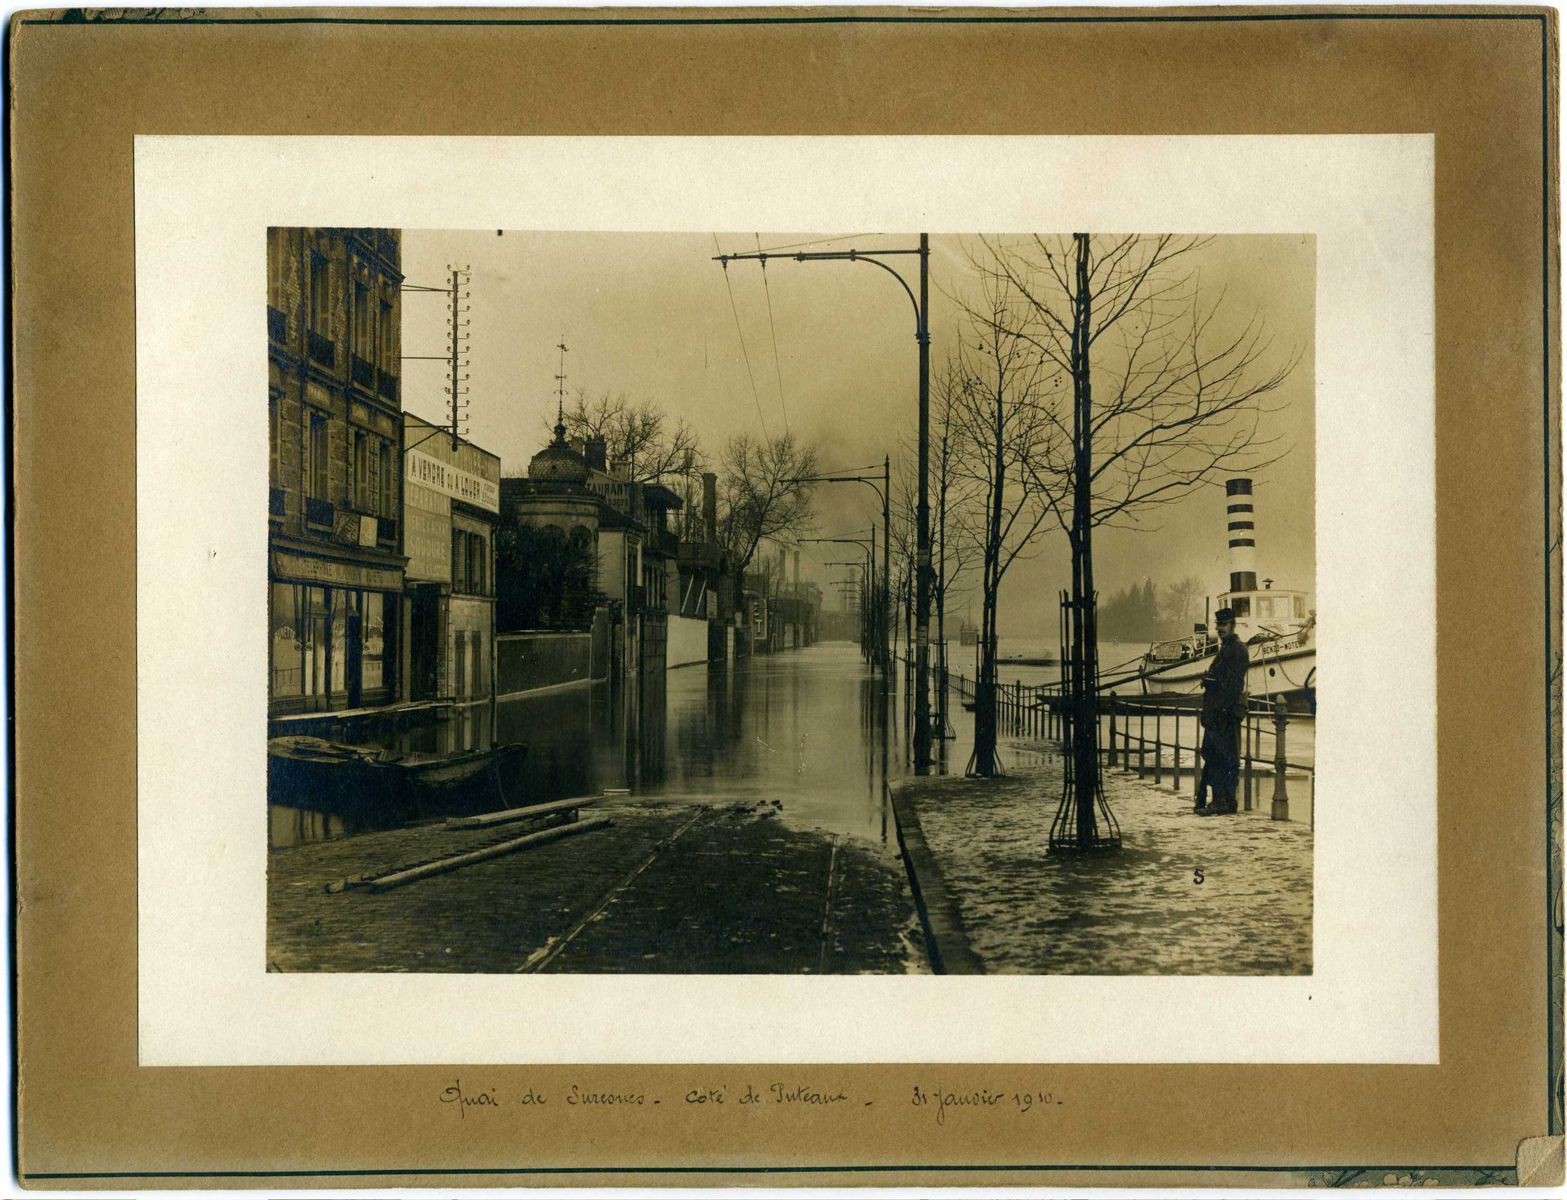 Quai de Suresnes - côté de Puteaux - 31 janvier 1910